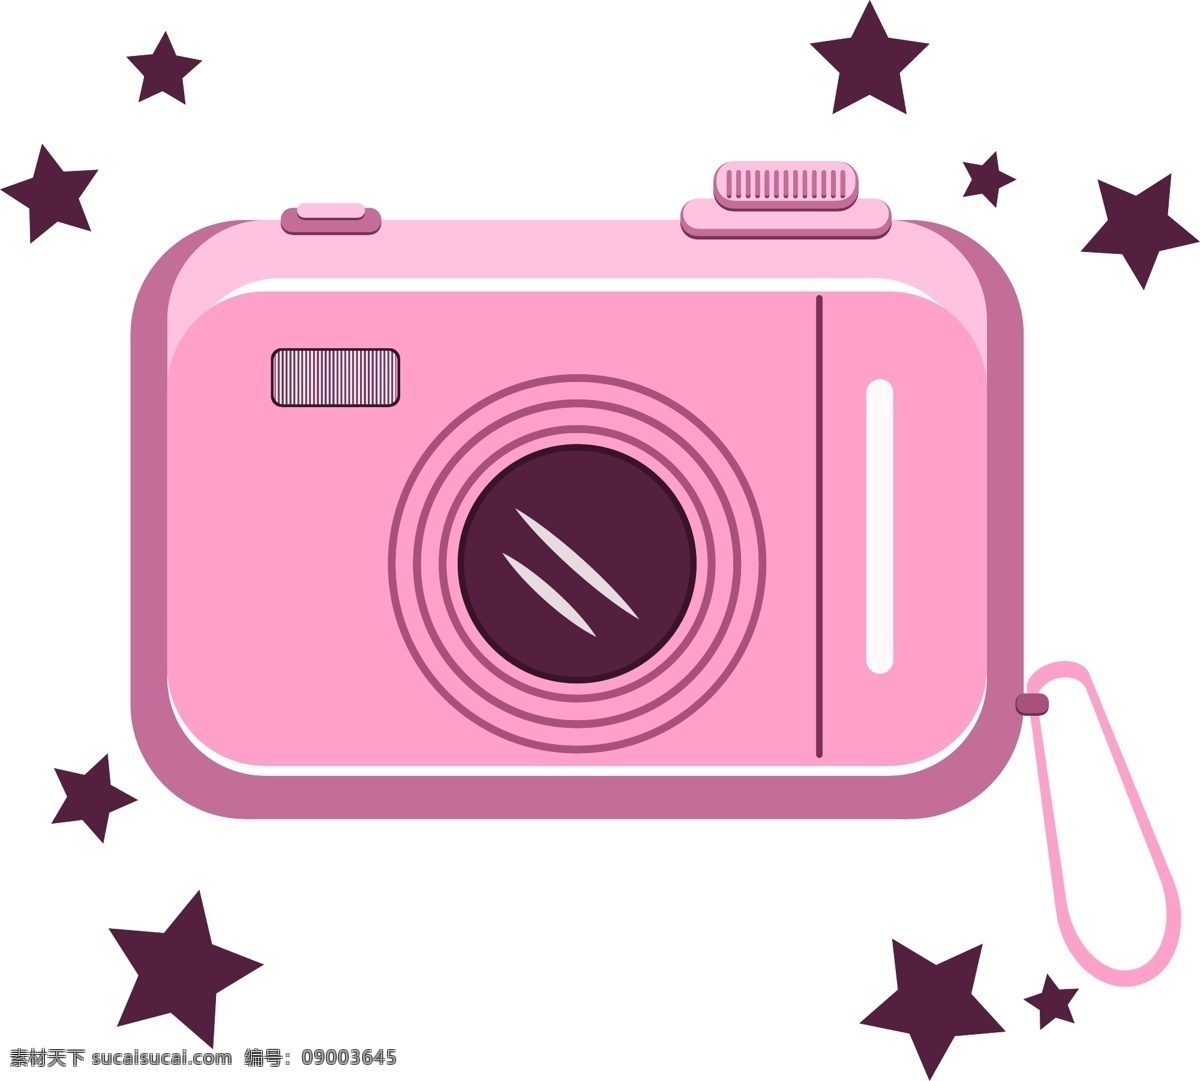 元素 电子产品 相机 设计元素 生活用品 粉色 少女心 公主风